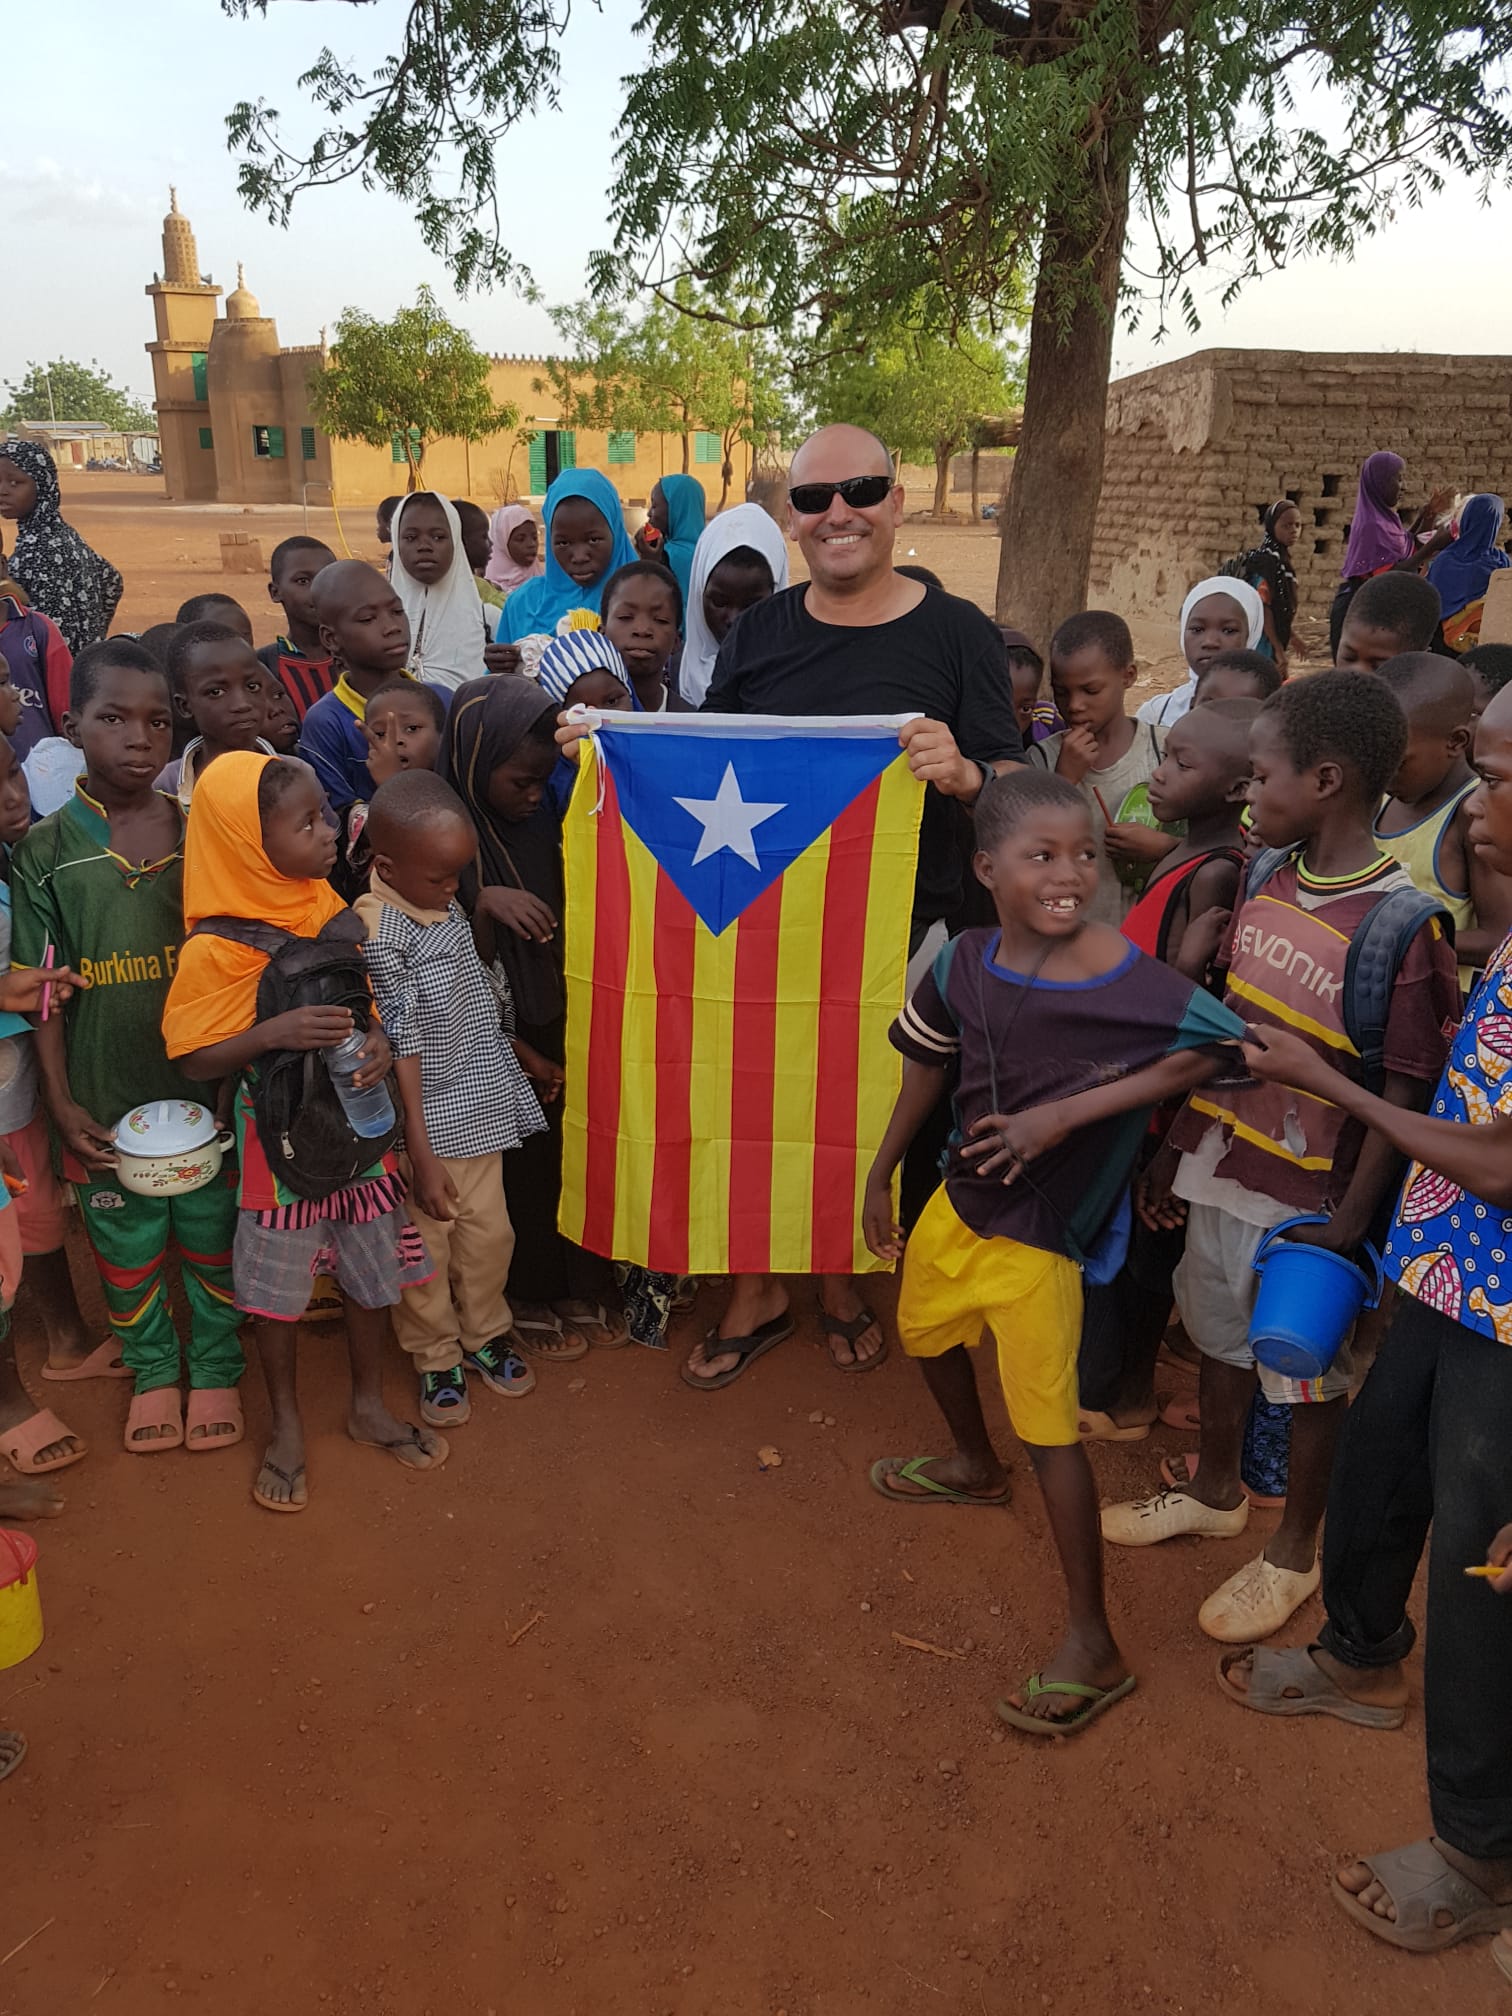 fotos lectors   Burkina Faso   Didac Hidalgo